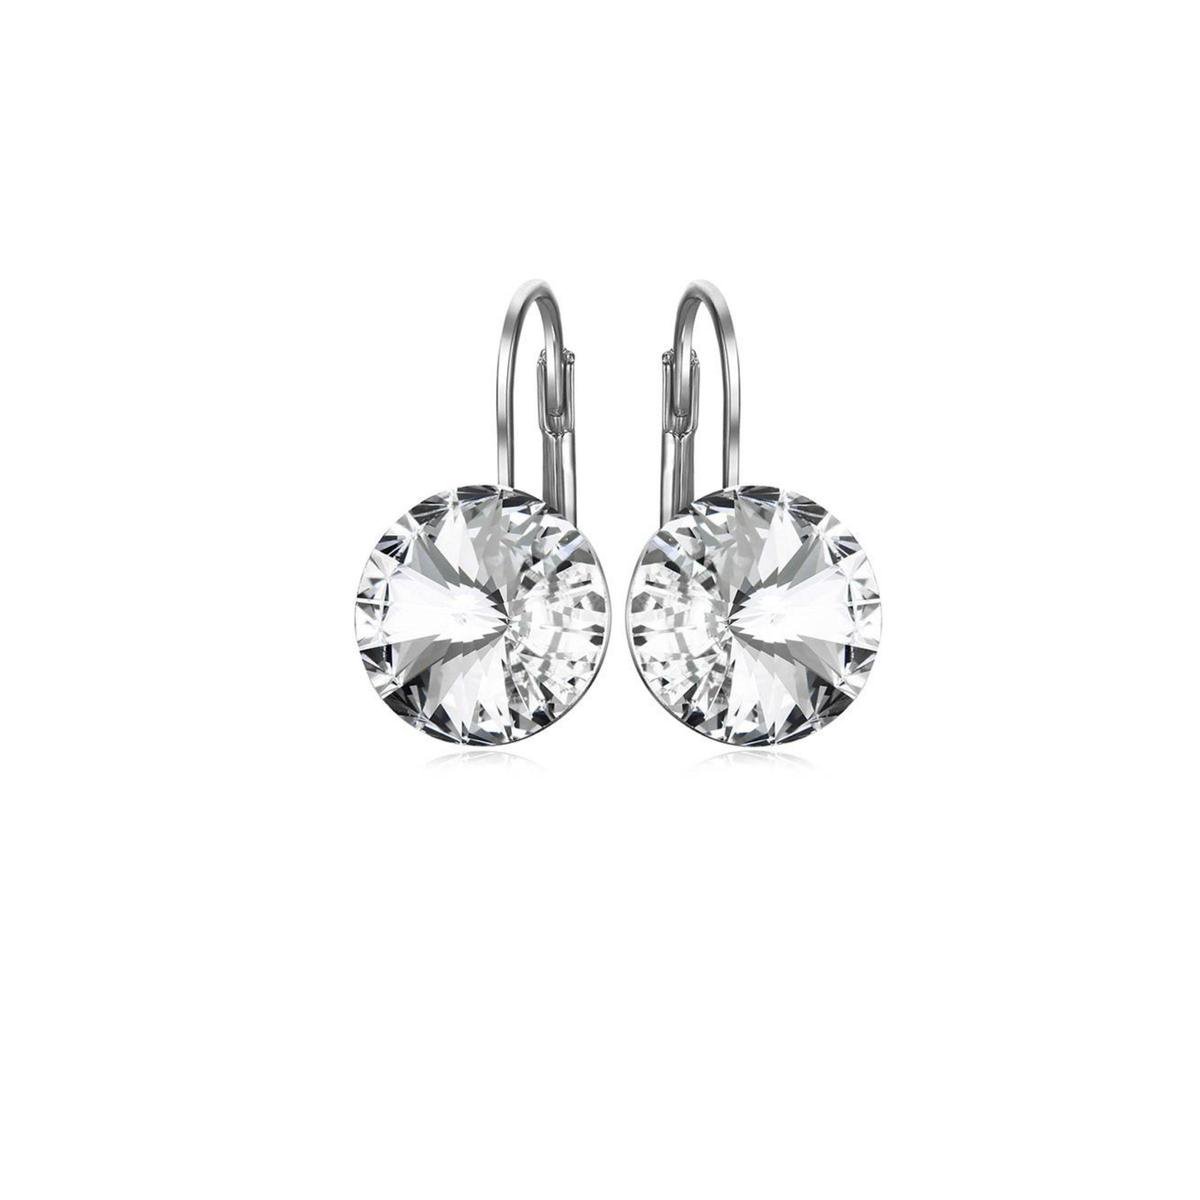 Semyco® Oorbellen zilver hangers Swarovski rond - Crystal Transparant - Statement oorbellen 1 paar in luxe geschenkverpakking - Cadeau inspiratie - Cadeau vrouw verjaardag